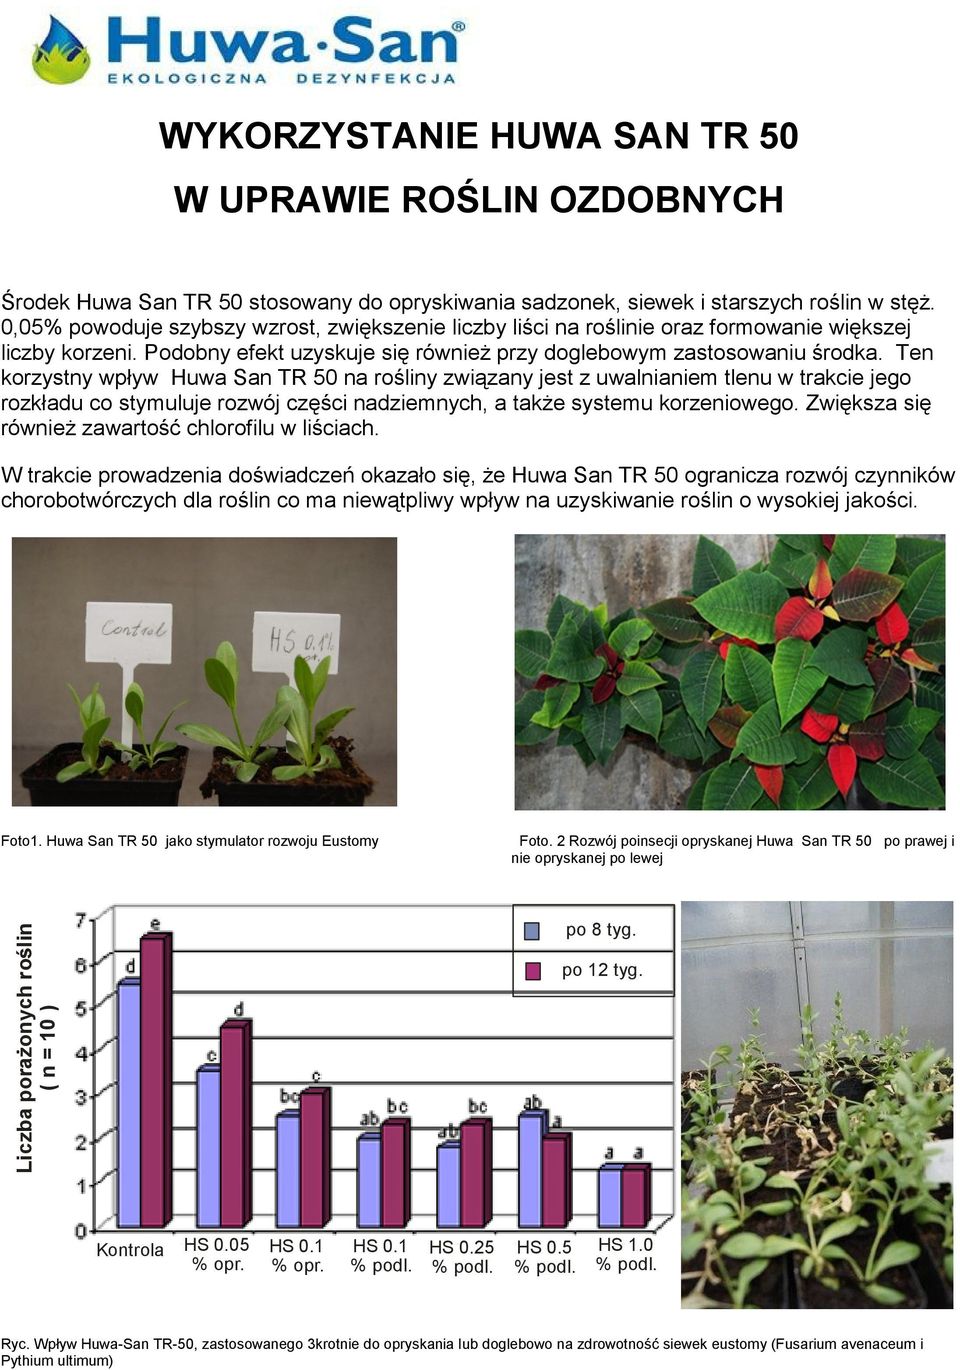 Ten korzystny wpływ Huwa San TR 50 na rośliny związany jest z uwalnianiem tlenu w trakcie jego rozkładu co stymuluje rozwój części nadziemnych, a także systemu korzeniowego.